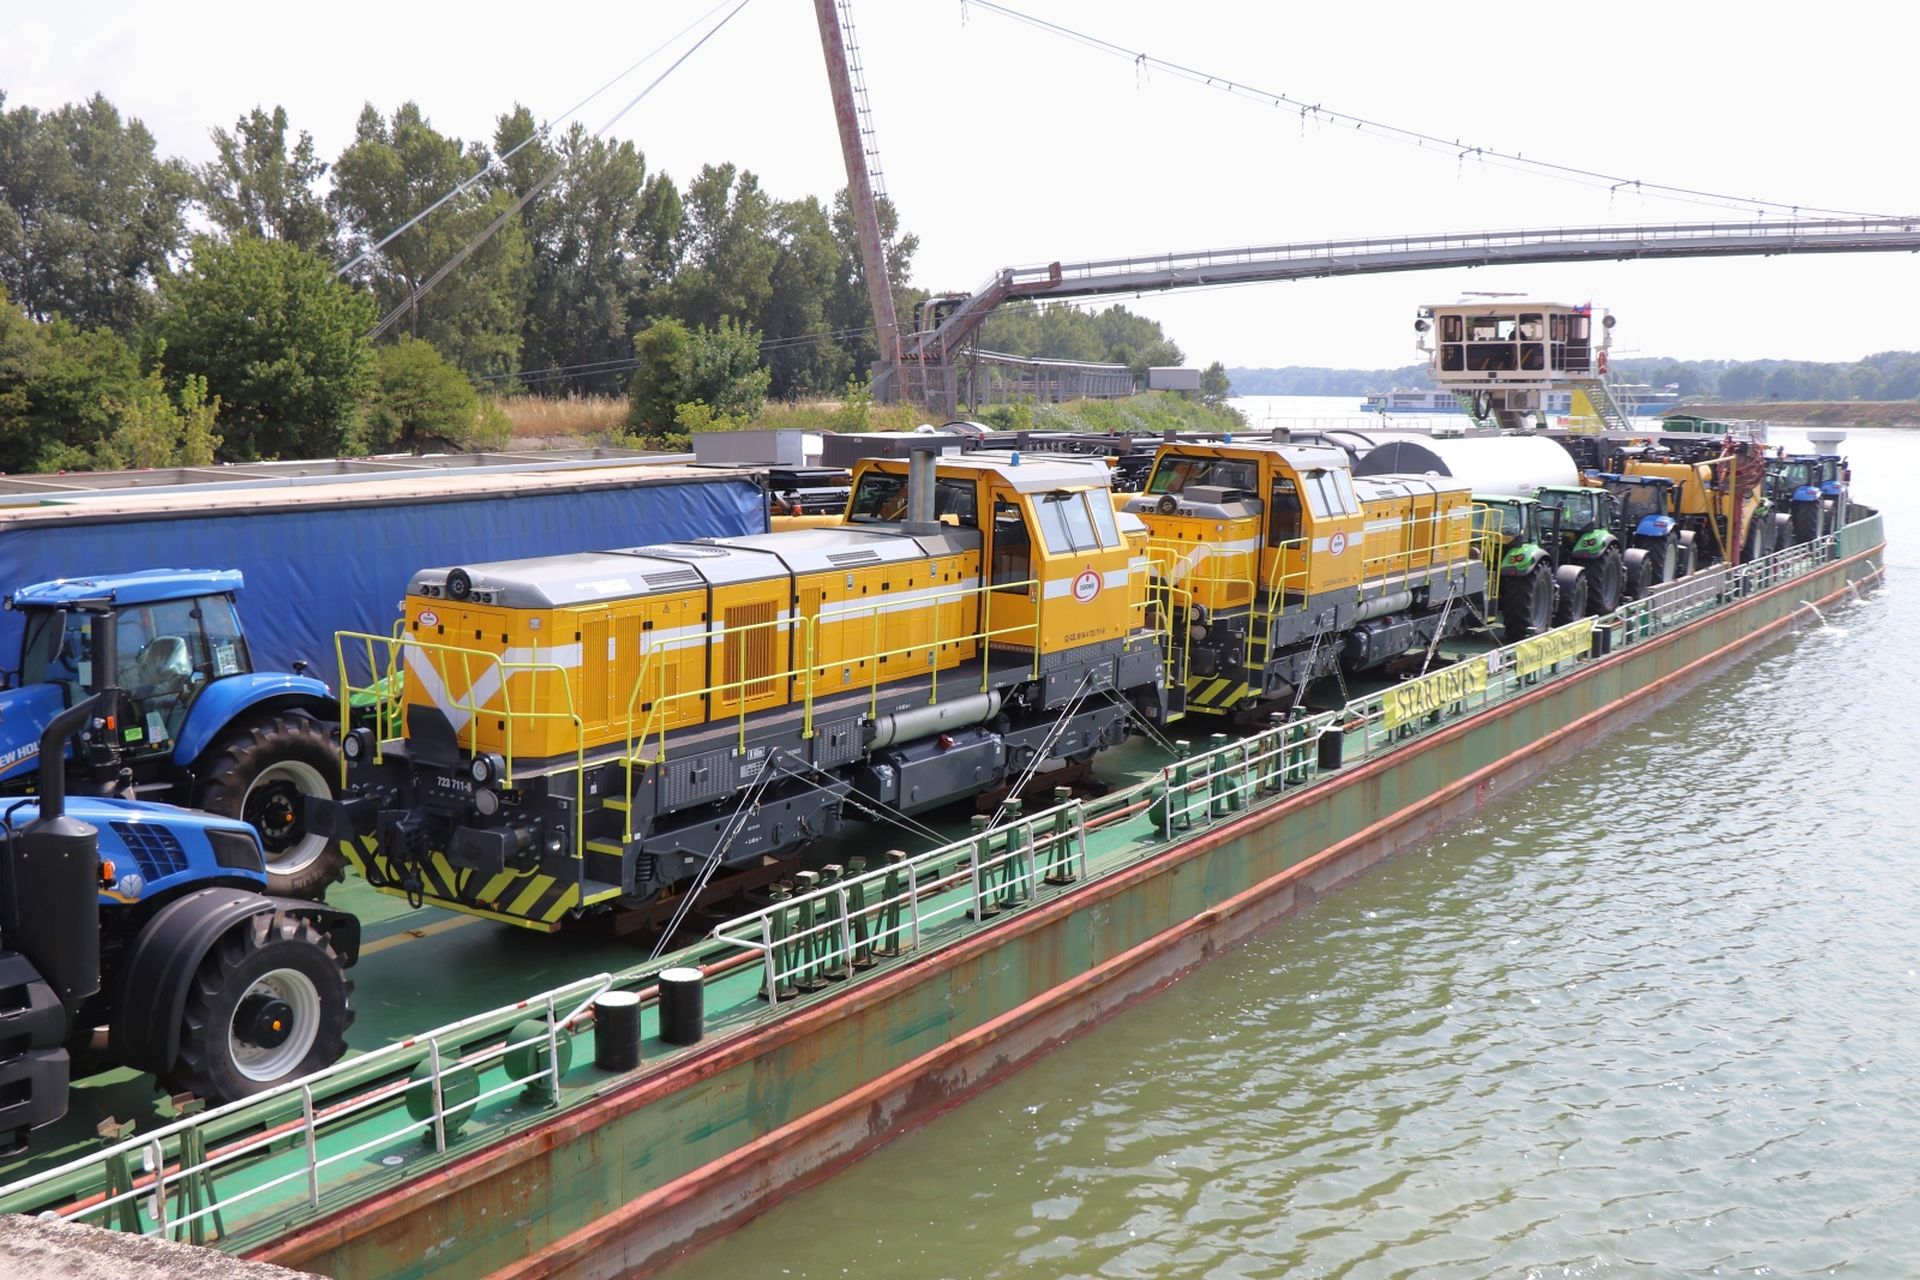 Lokomotivy na lodi plující po Dunaji v Bratislavě, vodní dopravu firma využila až do Ruse. Foto. CZ LOKO